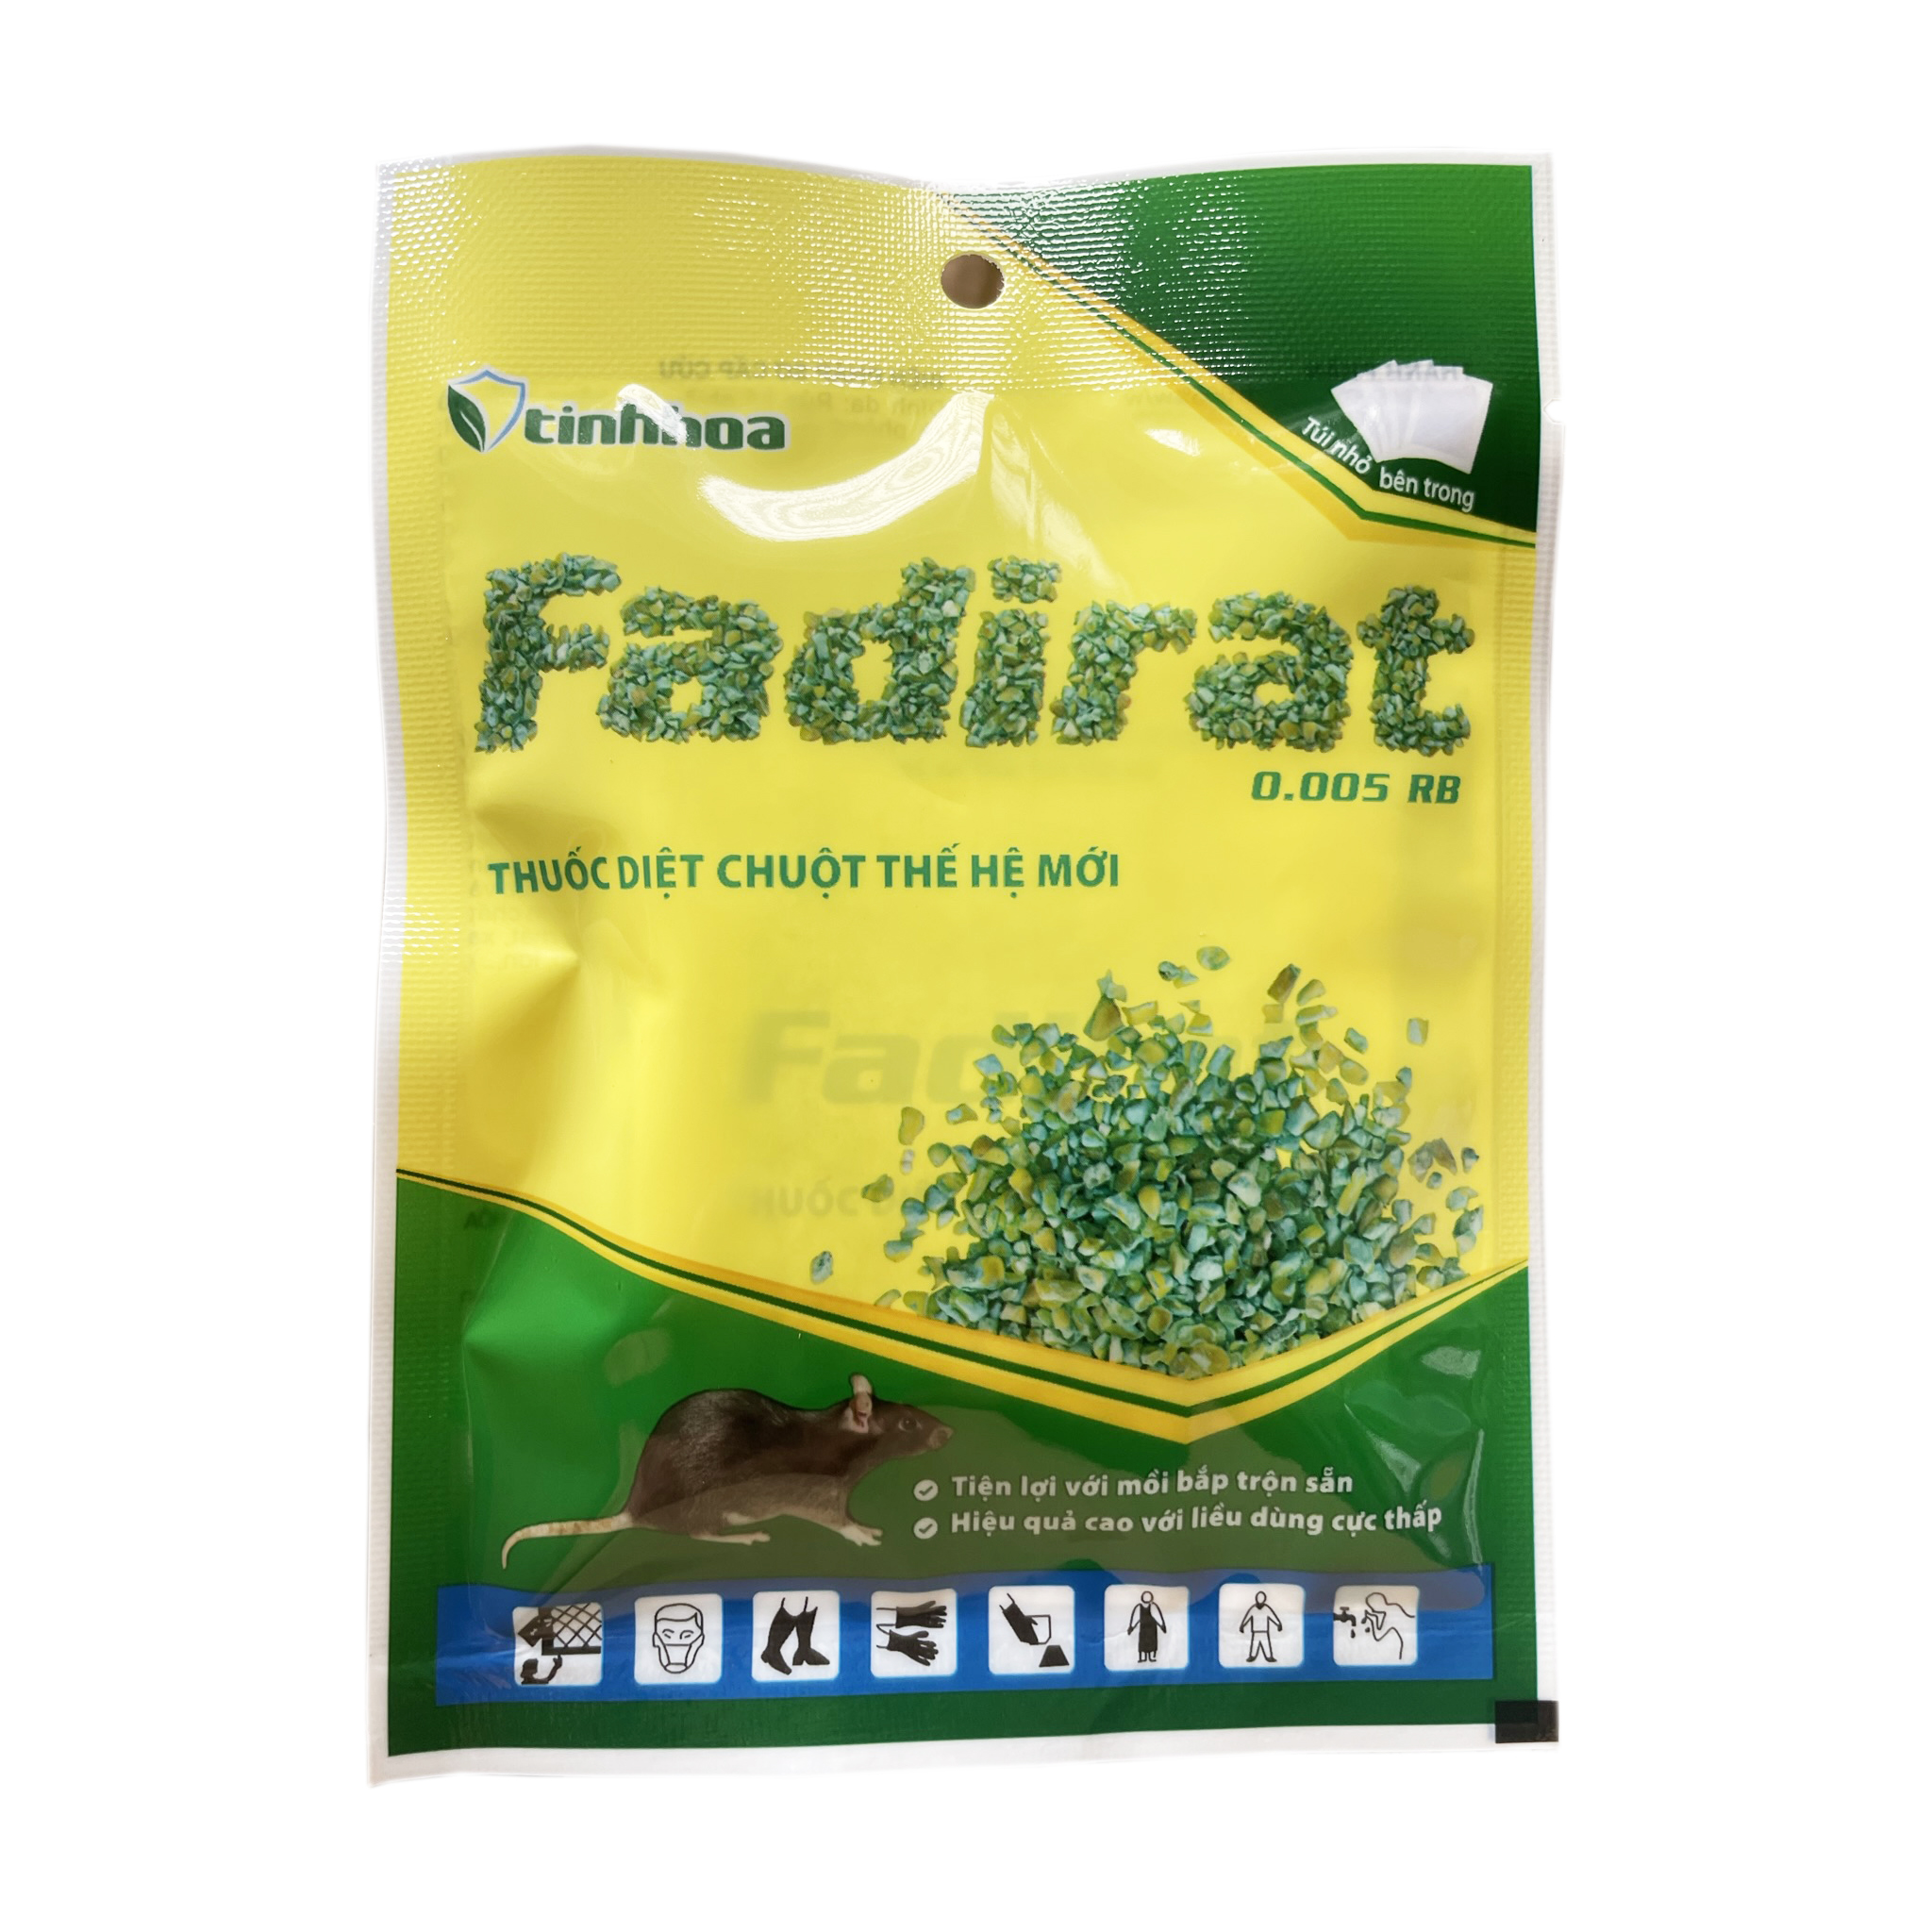 Thuốc diệt chuột thế hệ mới FADIRAT 0.005 RB - Tiện lợi với mồi bắp trộn sẵn - Hiệu quả cao với liều dùng cực thấp (10 gói x 4 túi)